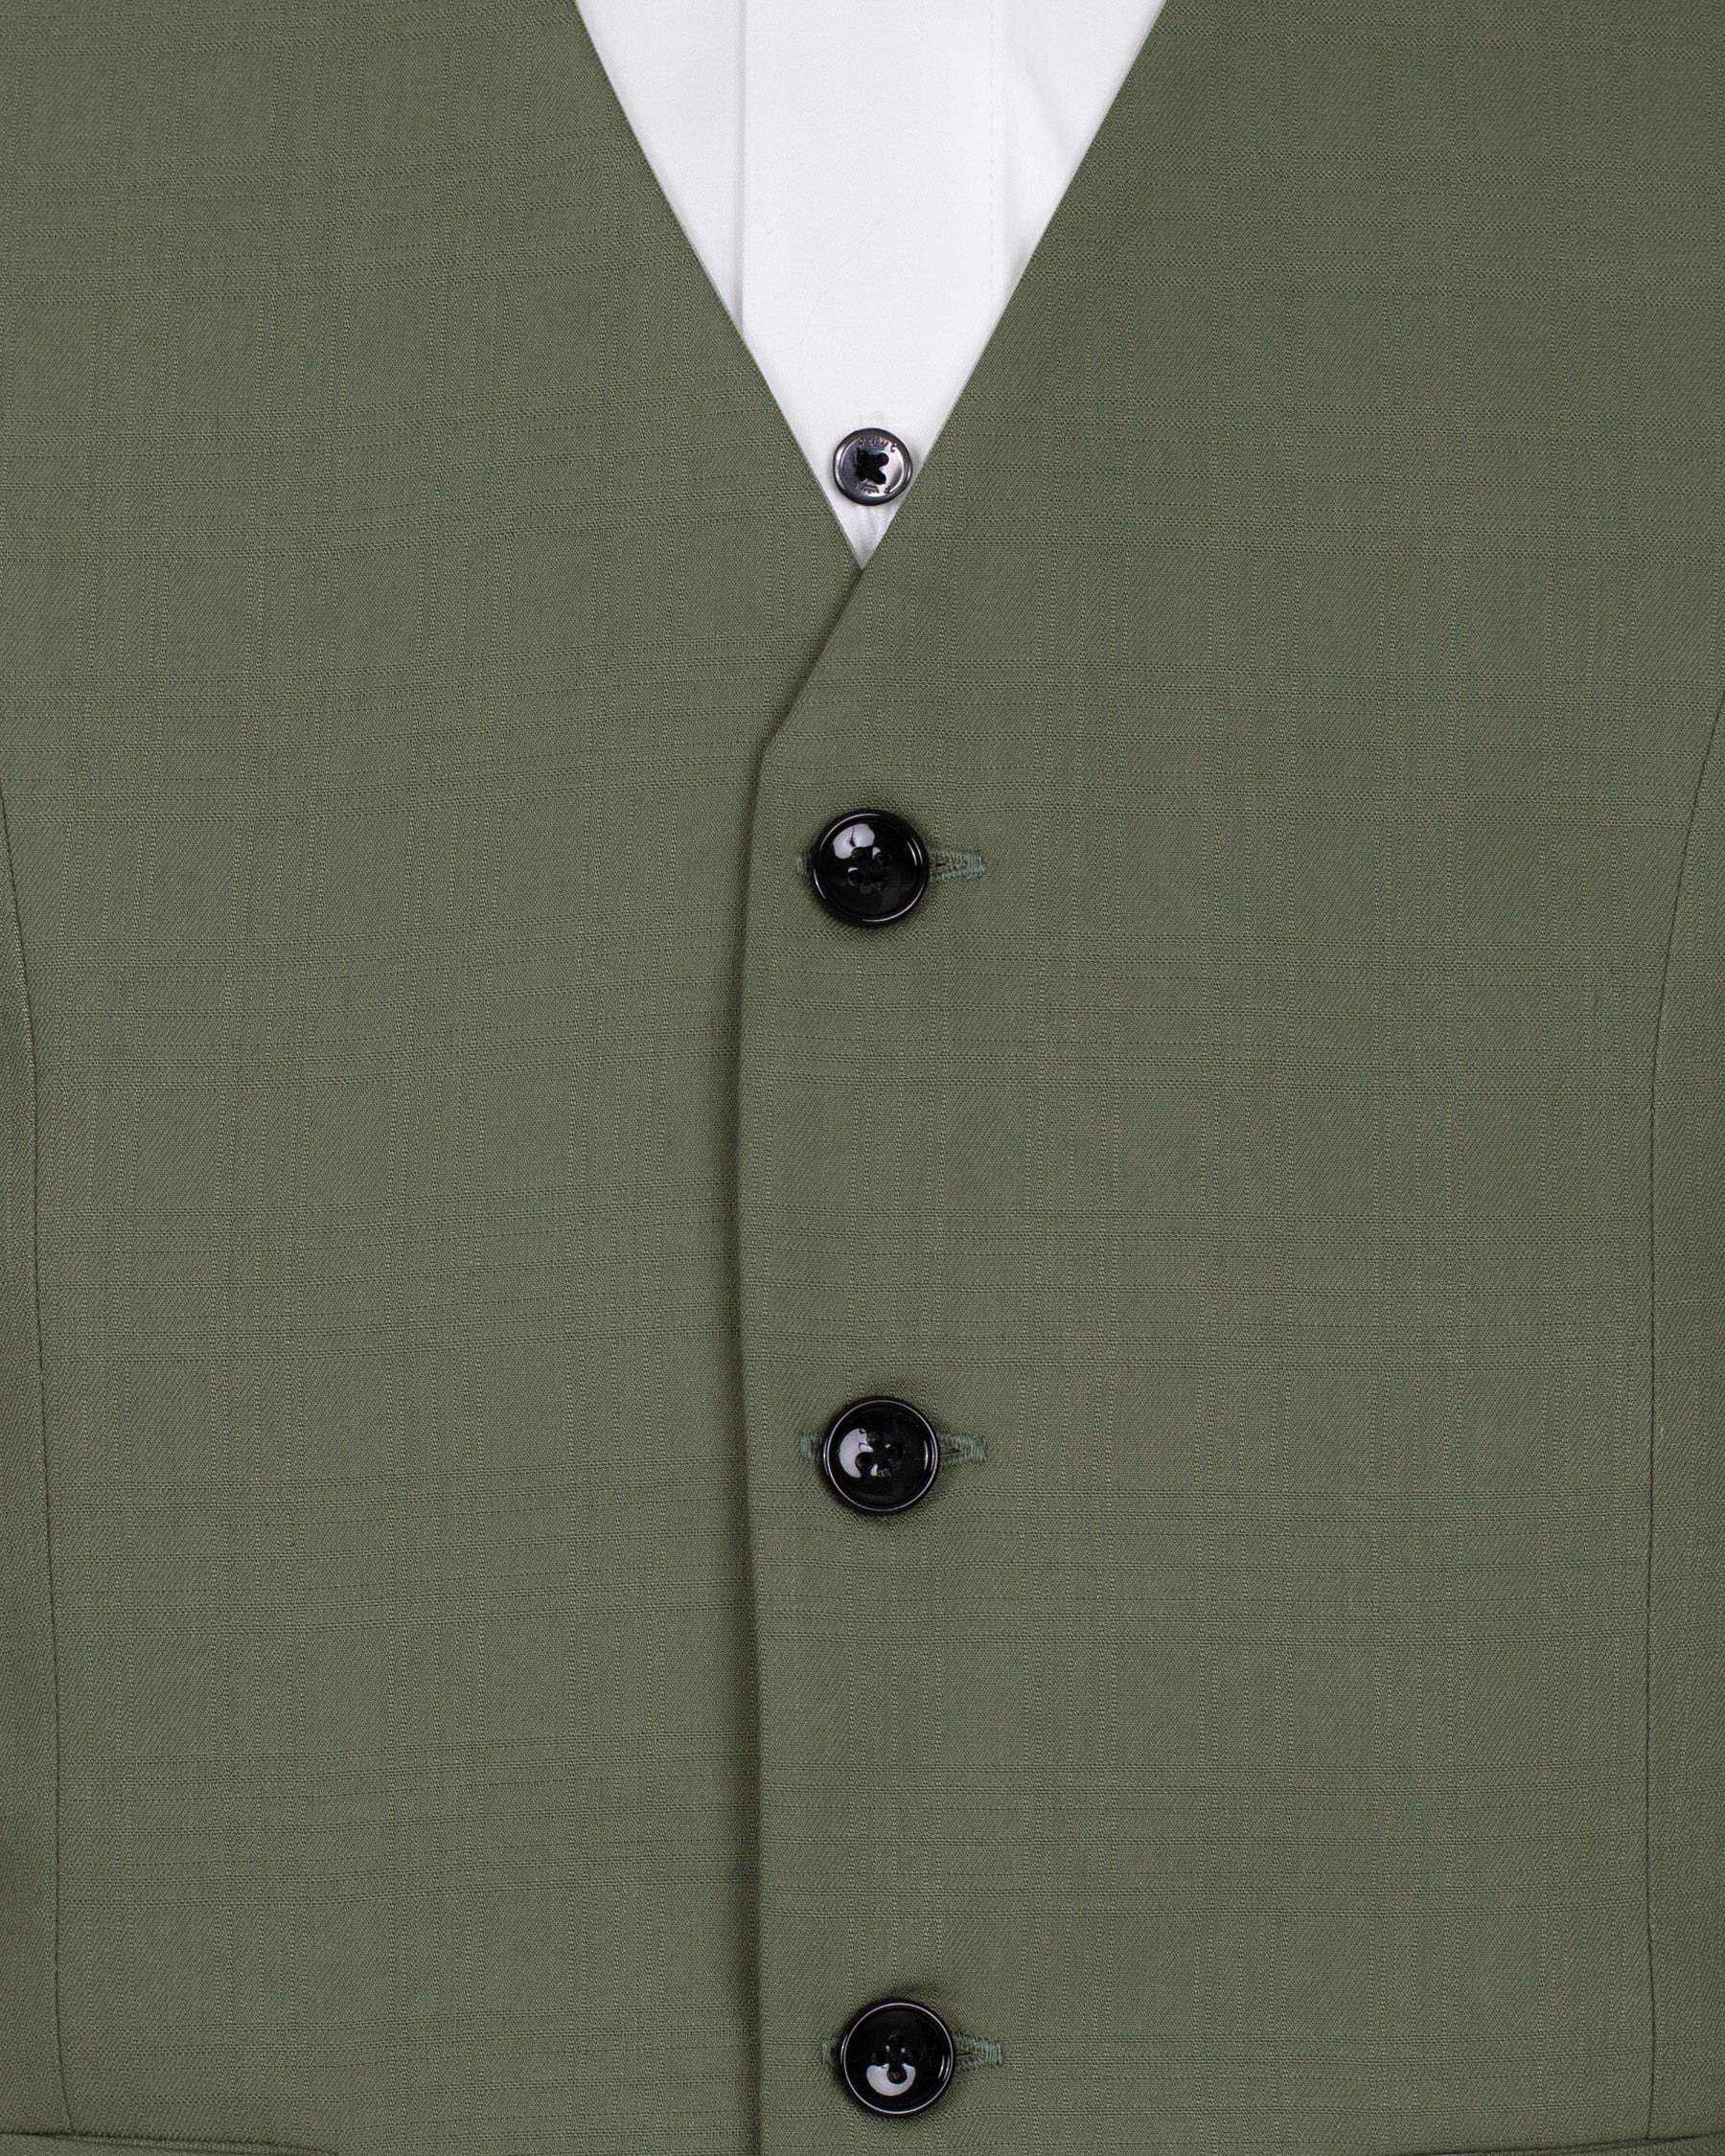 Finch Green Wool Rich Tuxedo Suit